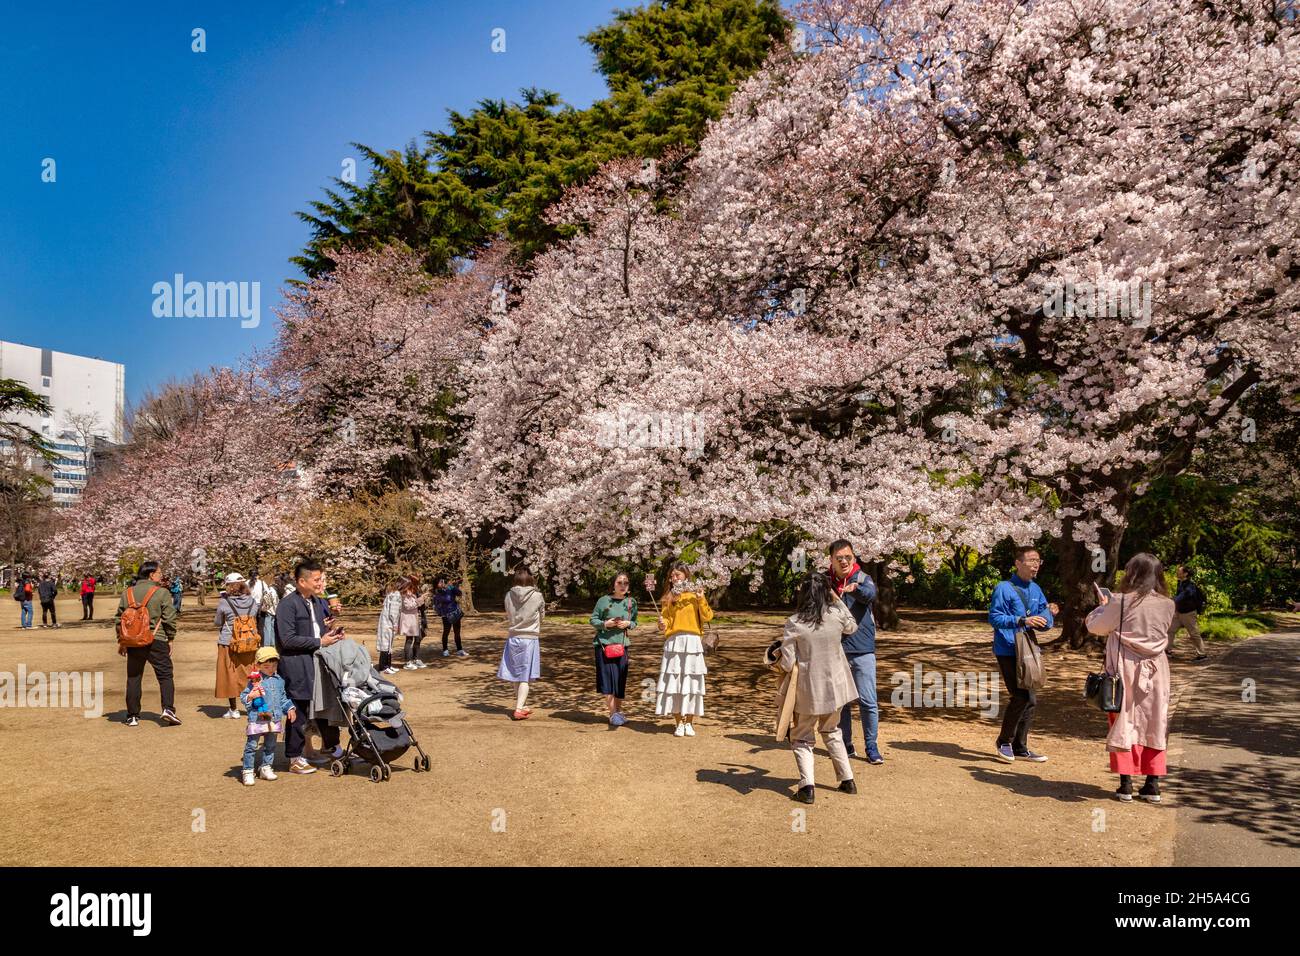 4 aprile 2019: Tokyo, Giappone - i giapponesi si godono Hanami Festival nel giardino nazionale Shinjuku Gyoen in una perfetta giornata di primavera. Foto Stock